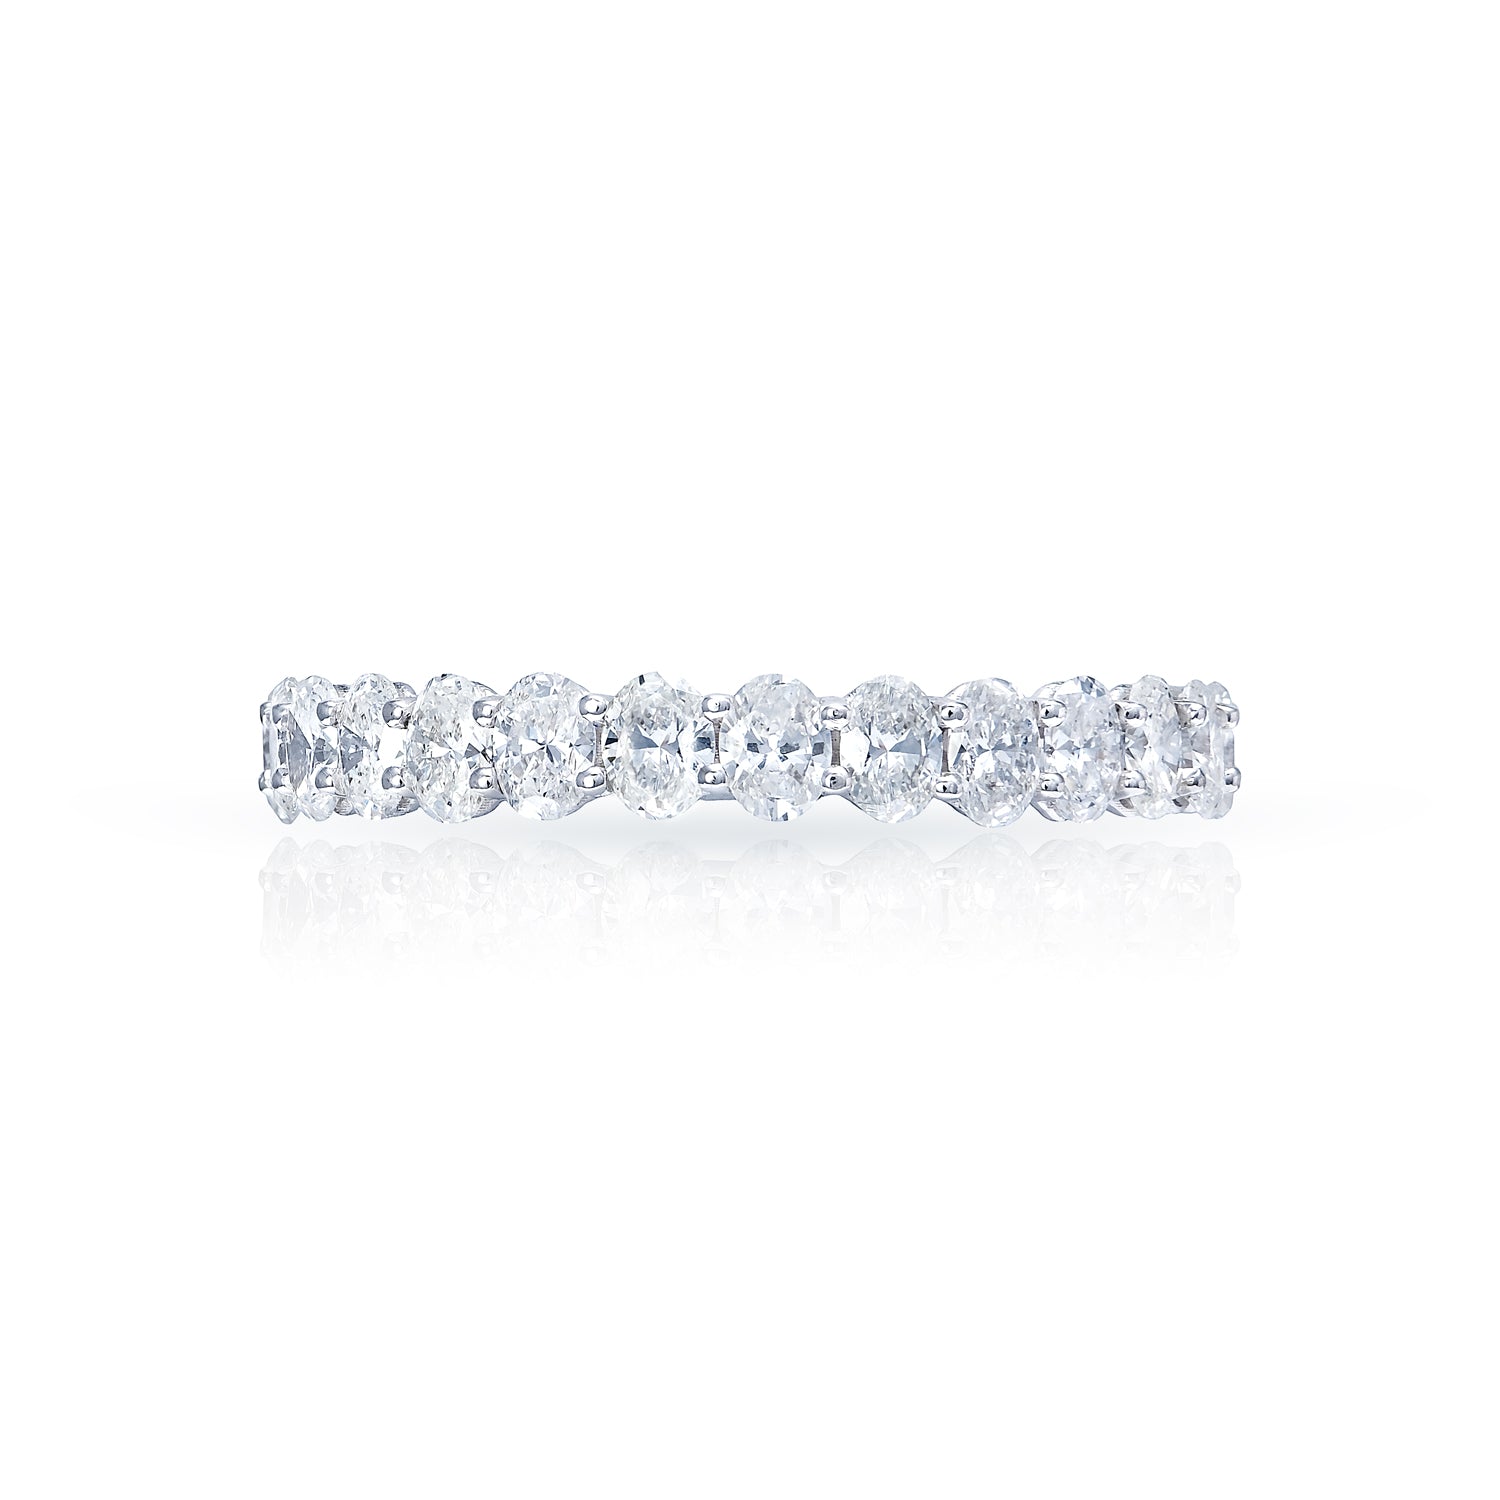 Imani 4 Carat Oval Cut Diamond Engagement Ring in 14 Karat White Gold